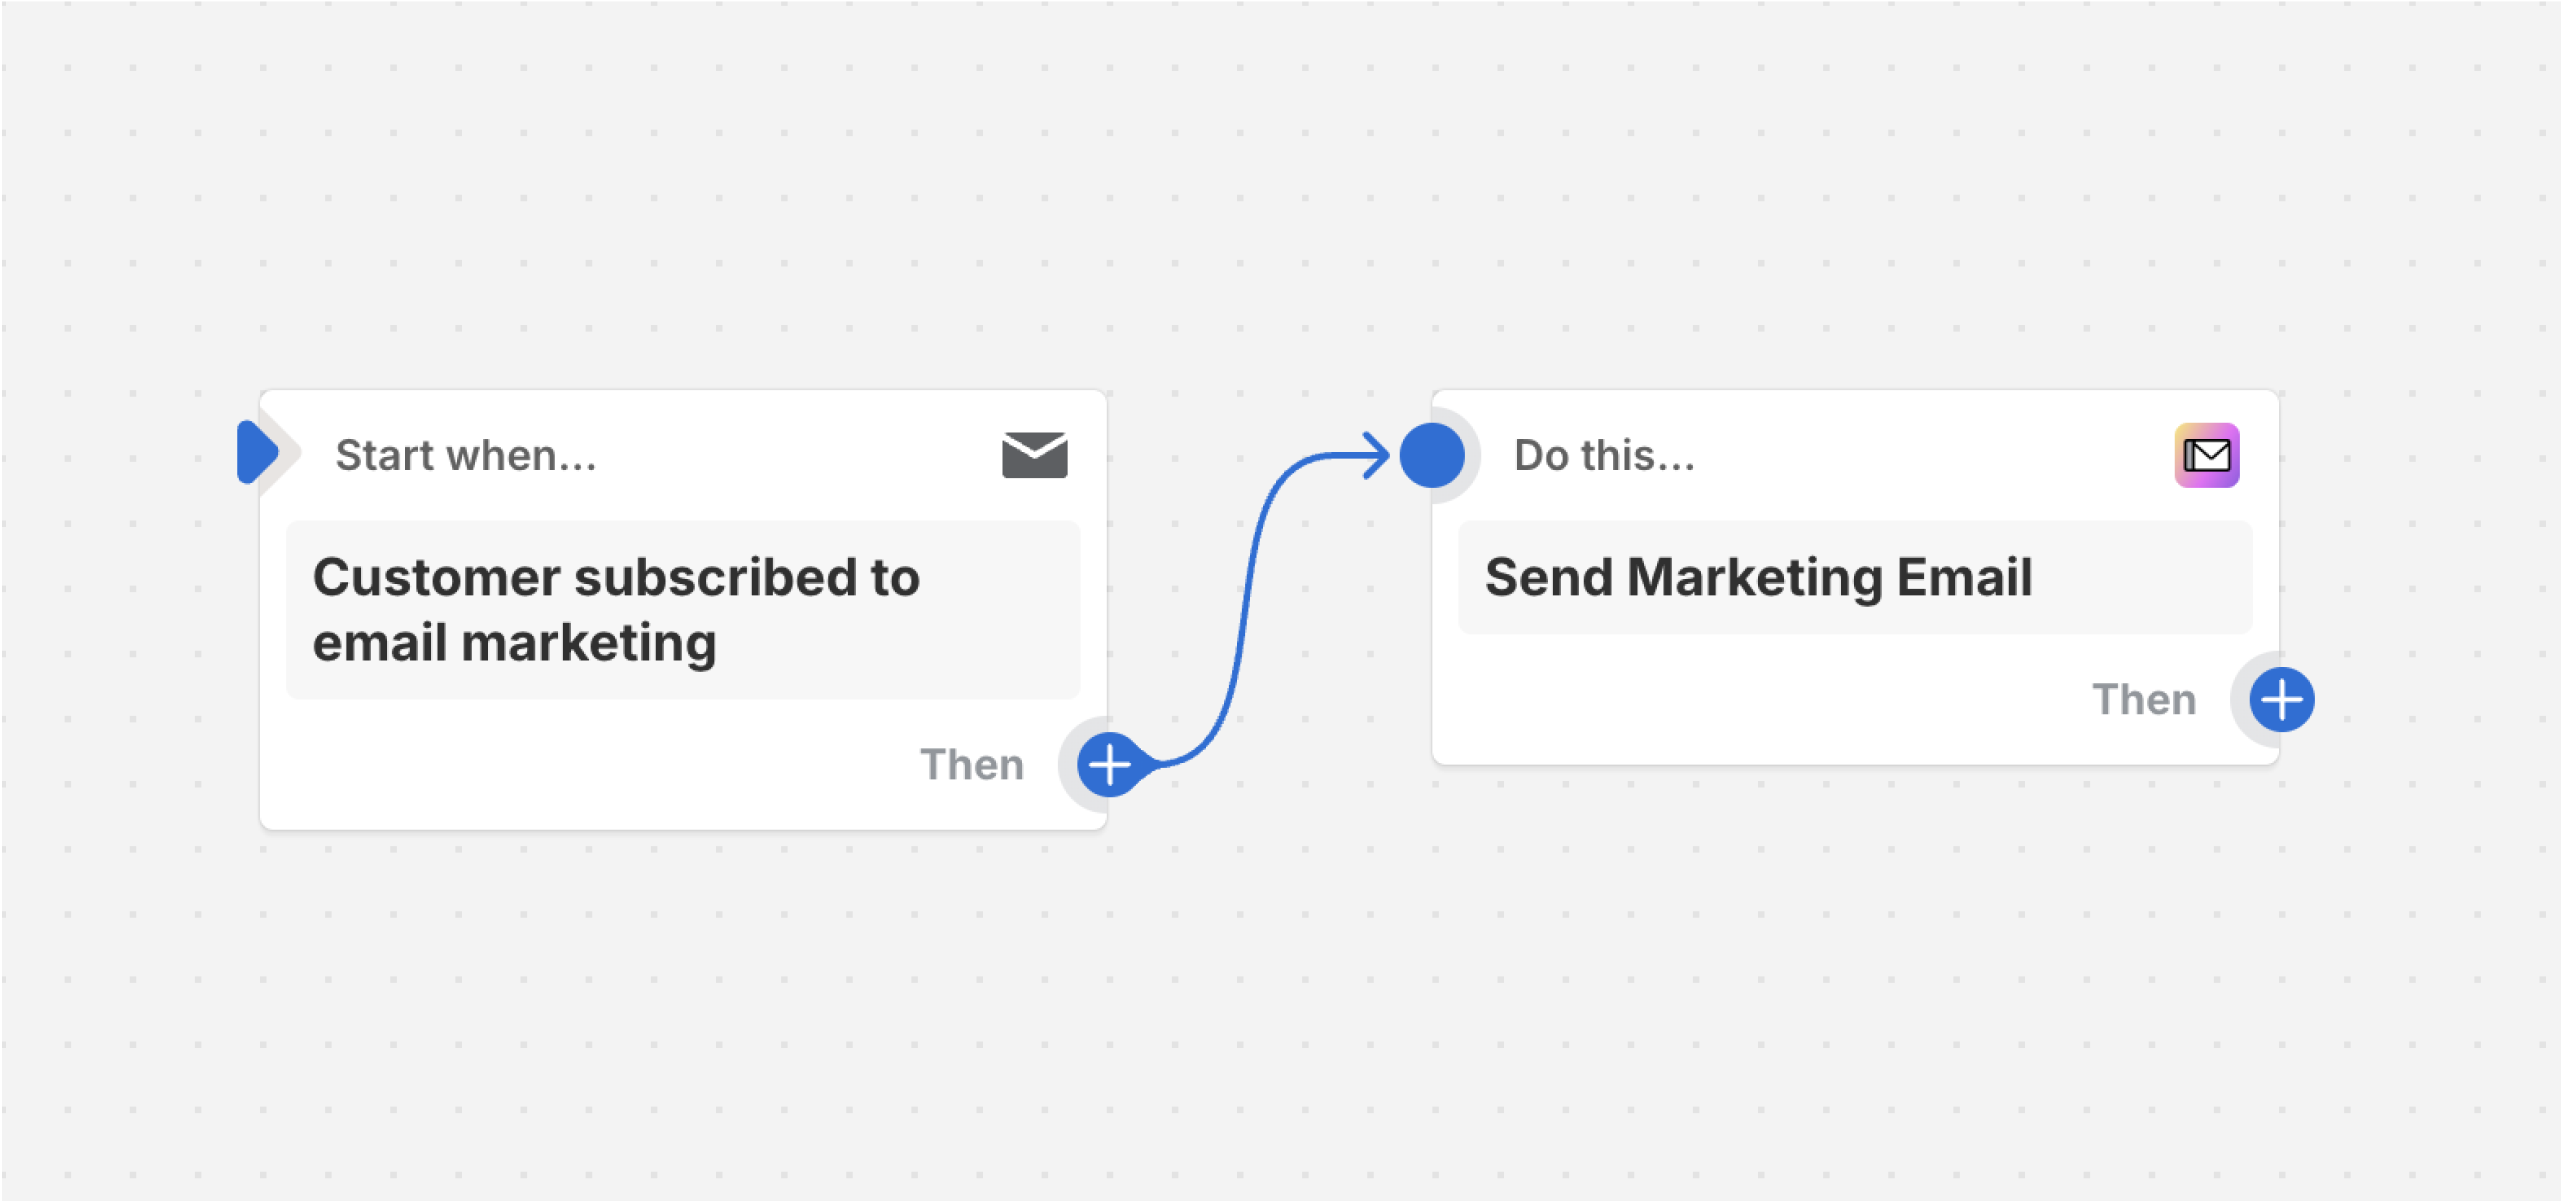 Esempio di flusso di lavoro che invia un'email marketing dopo che un cliente si iscrive all'email marketing